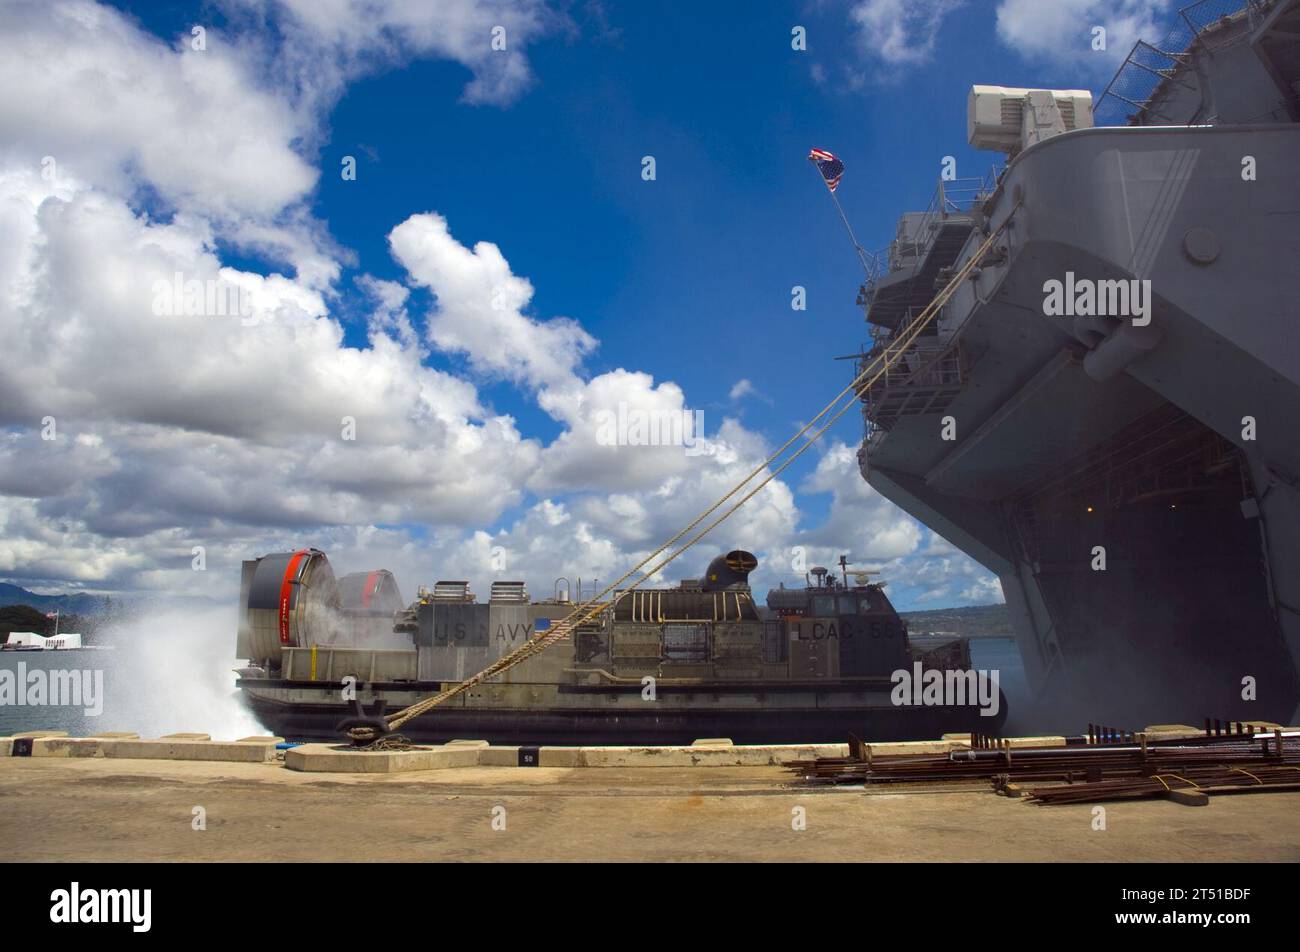 0807098135W-122 PEARL HARBOR, Hawaii (09 juillet 2008) Un coussin d'air d'un engin de débarquement livre de l'équipement au navire d'assaut amphibie USS Bonhomme Richard (LHD 6) pendant Rim of the Pacific (RIMPAC) 2008. RIMPAC est le worldХs plus grand exercice multinational prévu tous les deux ans par la flotte américaine du Pacifique. Parmi les participants figurent les États-Unis, l'Australie, le Canada, le Chili, le Japon, pays-Bas, Pérou, République de Corée, Singapour et Royaume-Uni. US Navy Banque D'Images